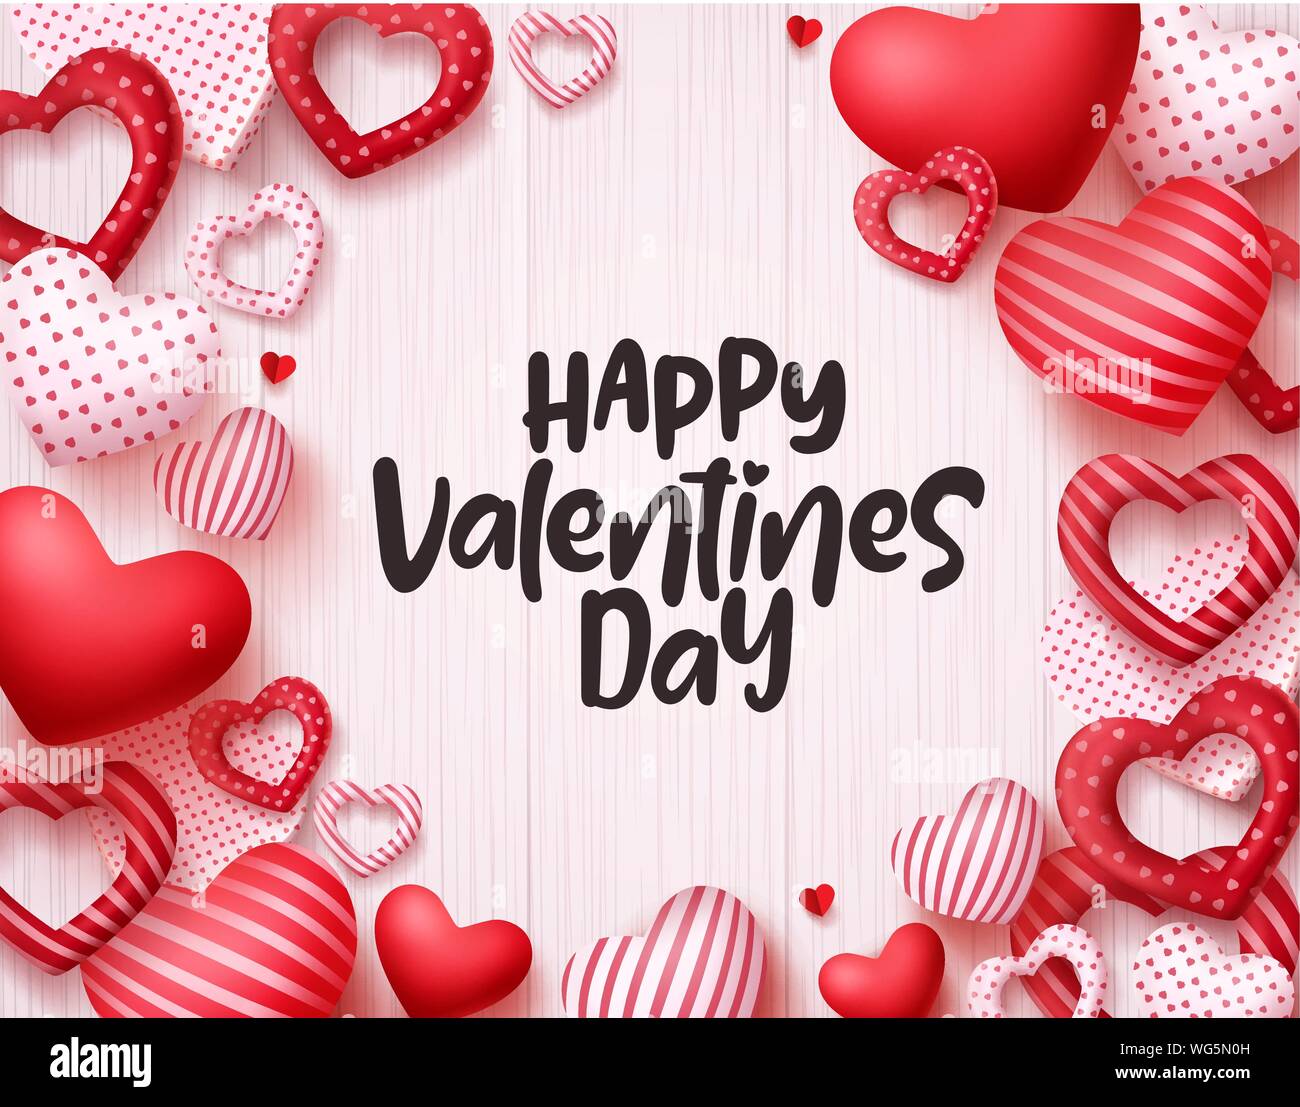 Día de San Valentín corazones antecedentes vectoriales. Feliz día de San Valentín tarjeta de felicitación diseño de banner con texto en espacio blanco vacío y Corazones rojos los elementos shape Ilustración del Vector